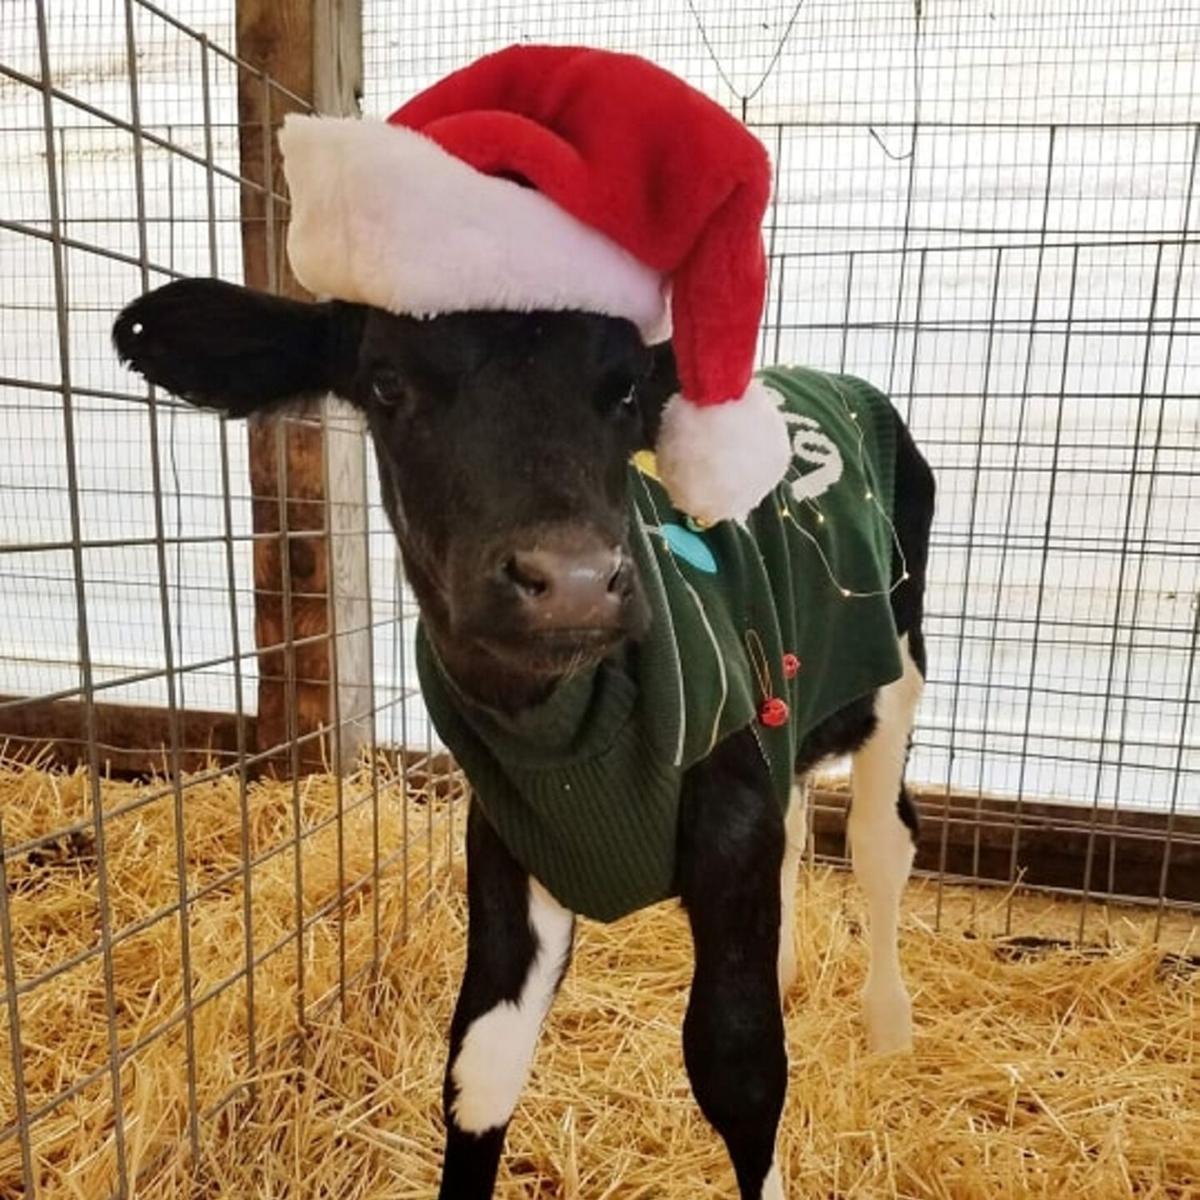 Christmas on the farm